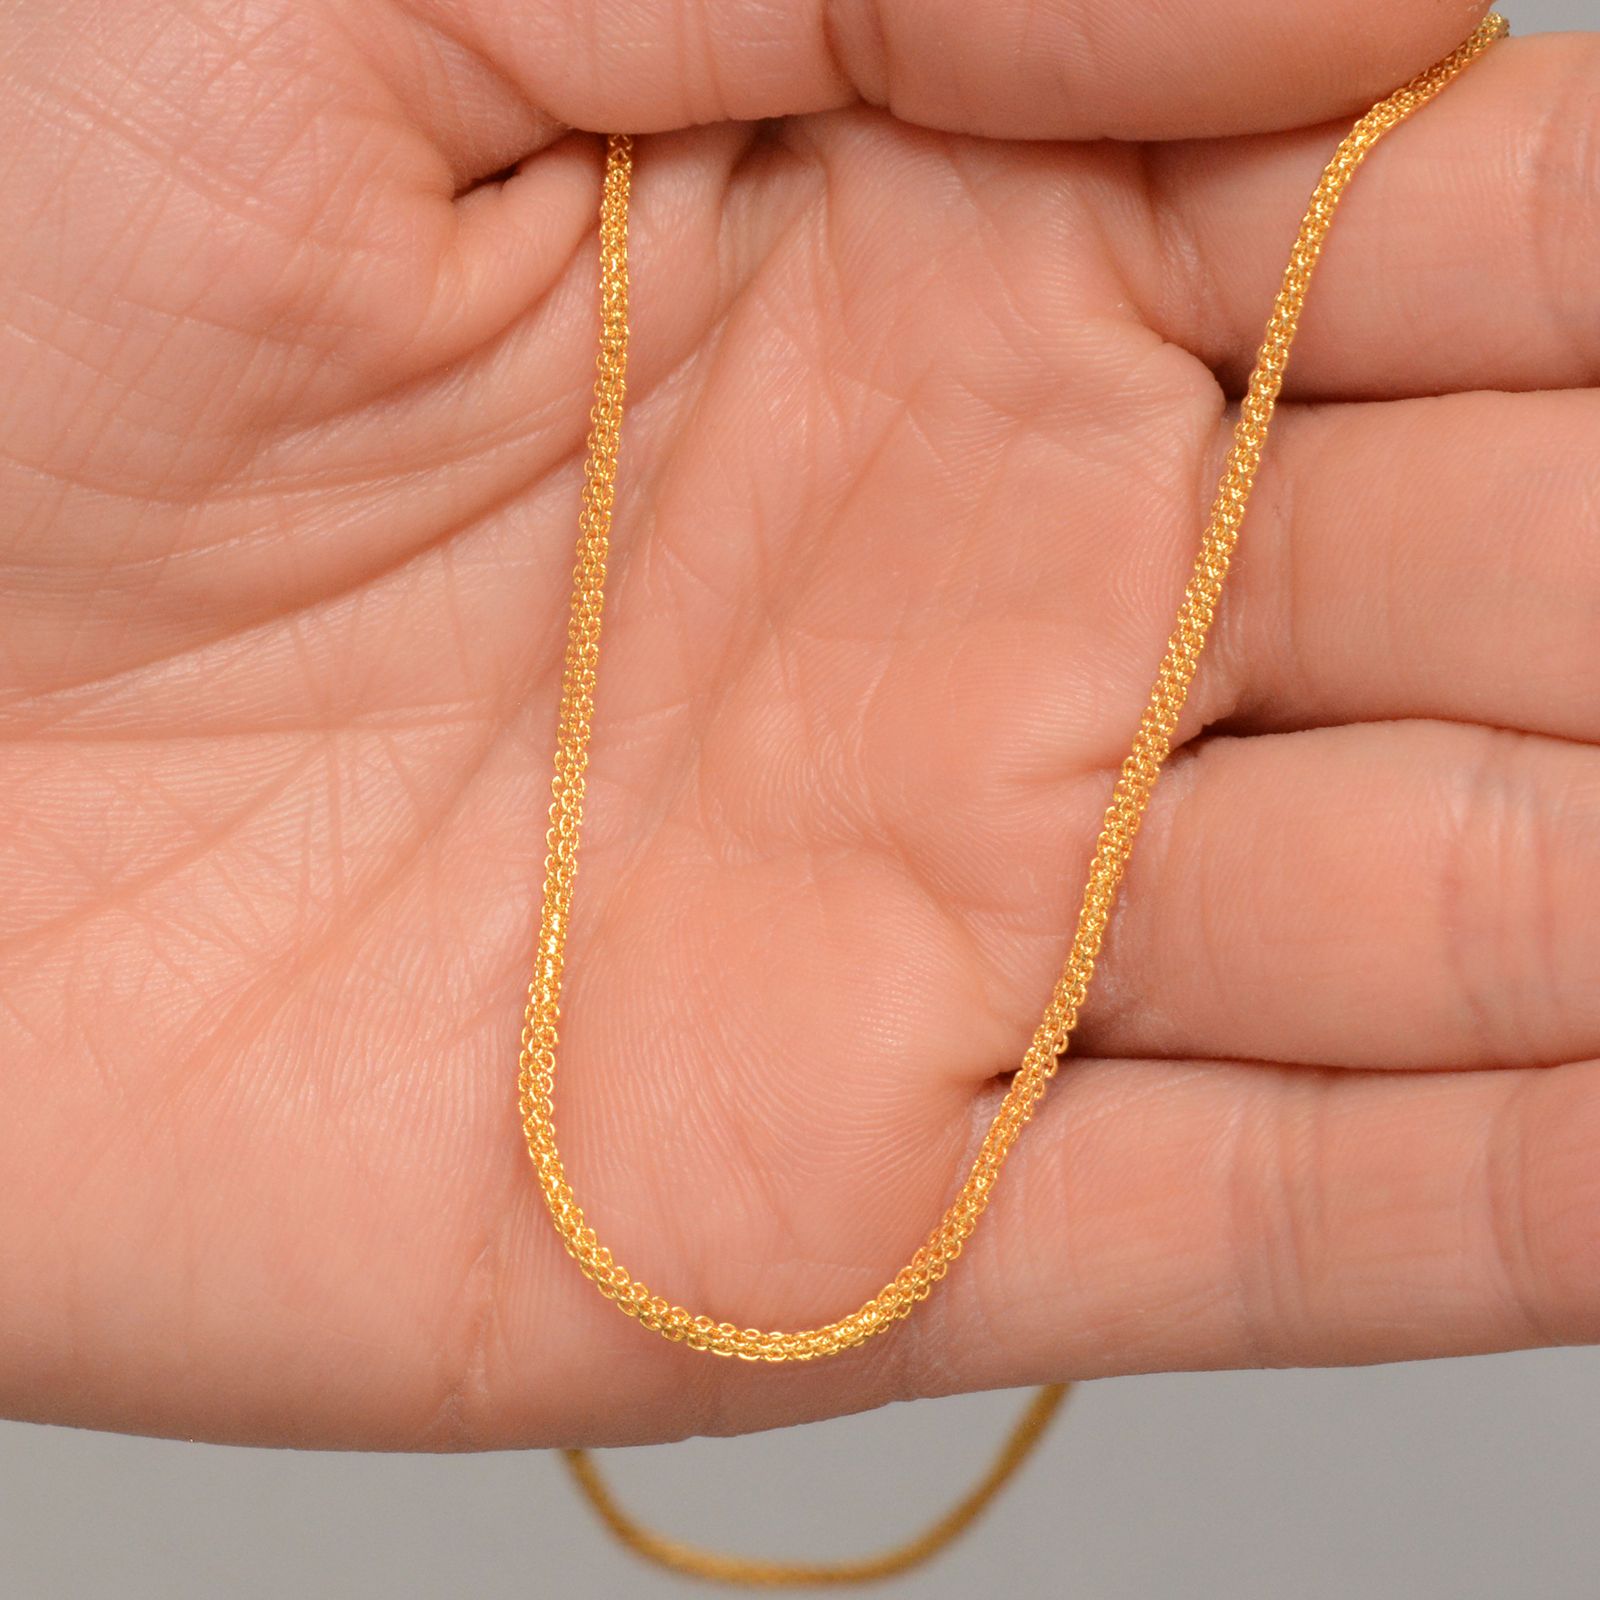 زنجیر طلا 18 عیار زنانه طلای مستجابی مدل بیزمارک چهارگوش کد M45 -  - 2